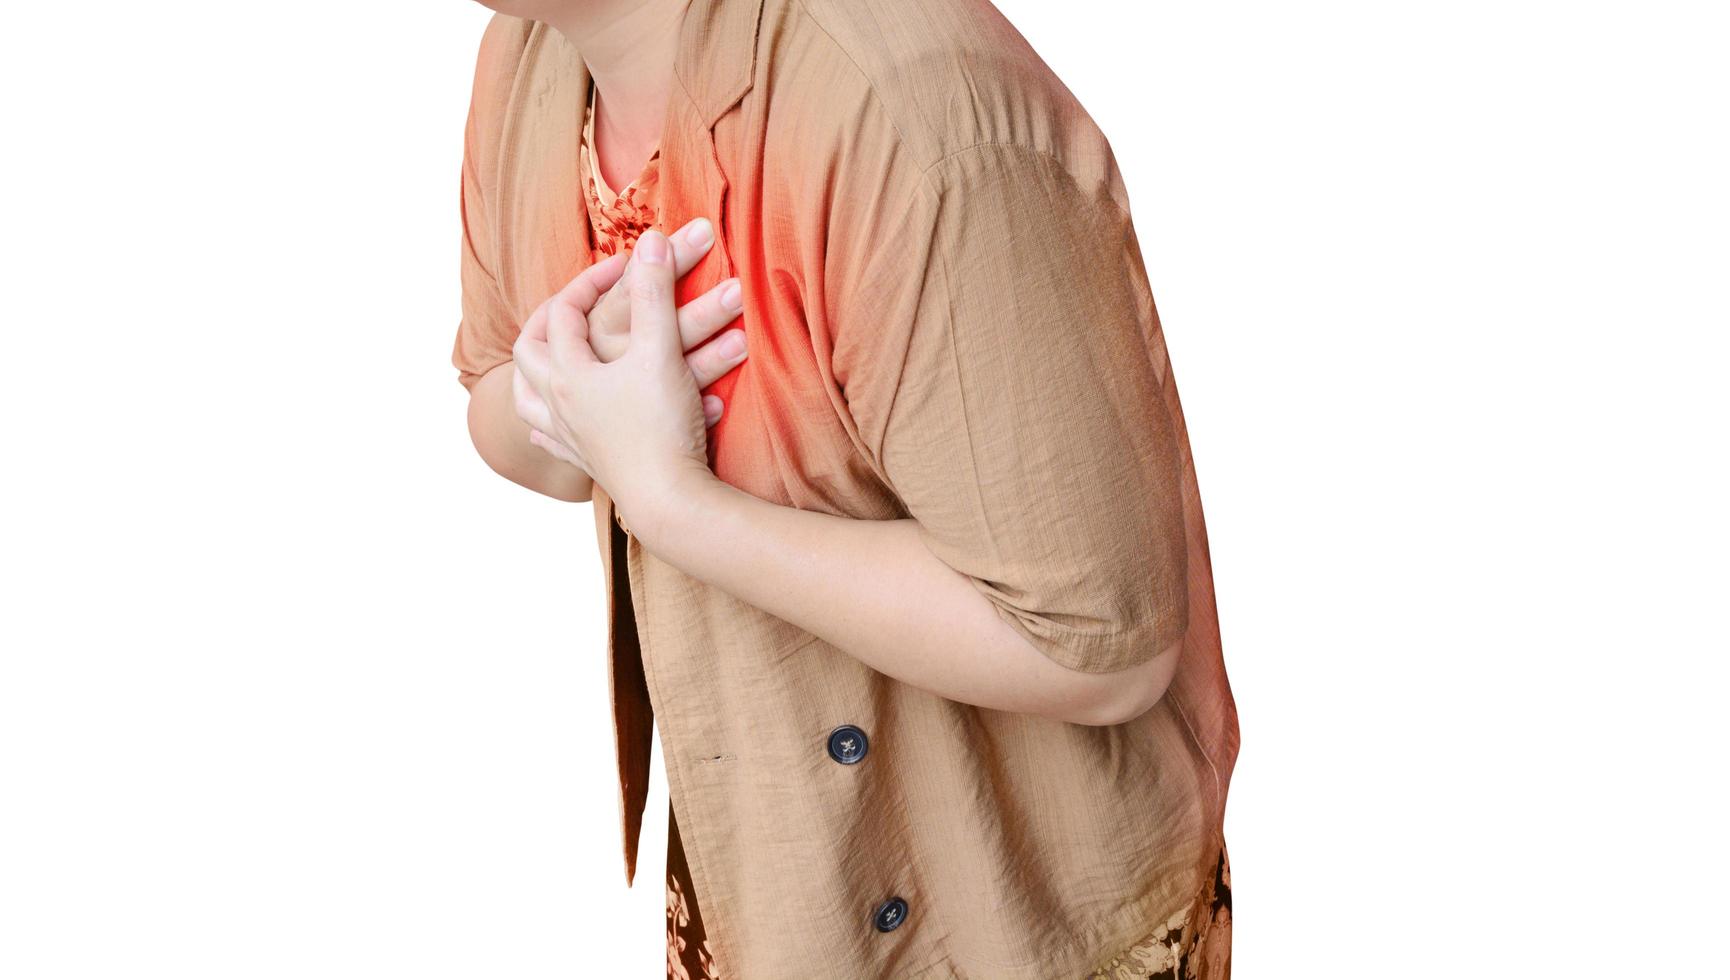 en kvinna innehav henne hand på henne bröst är har en hjärta ge sig på. isolerat på en vit bakgrund foto